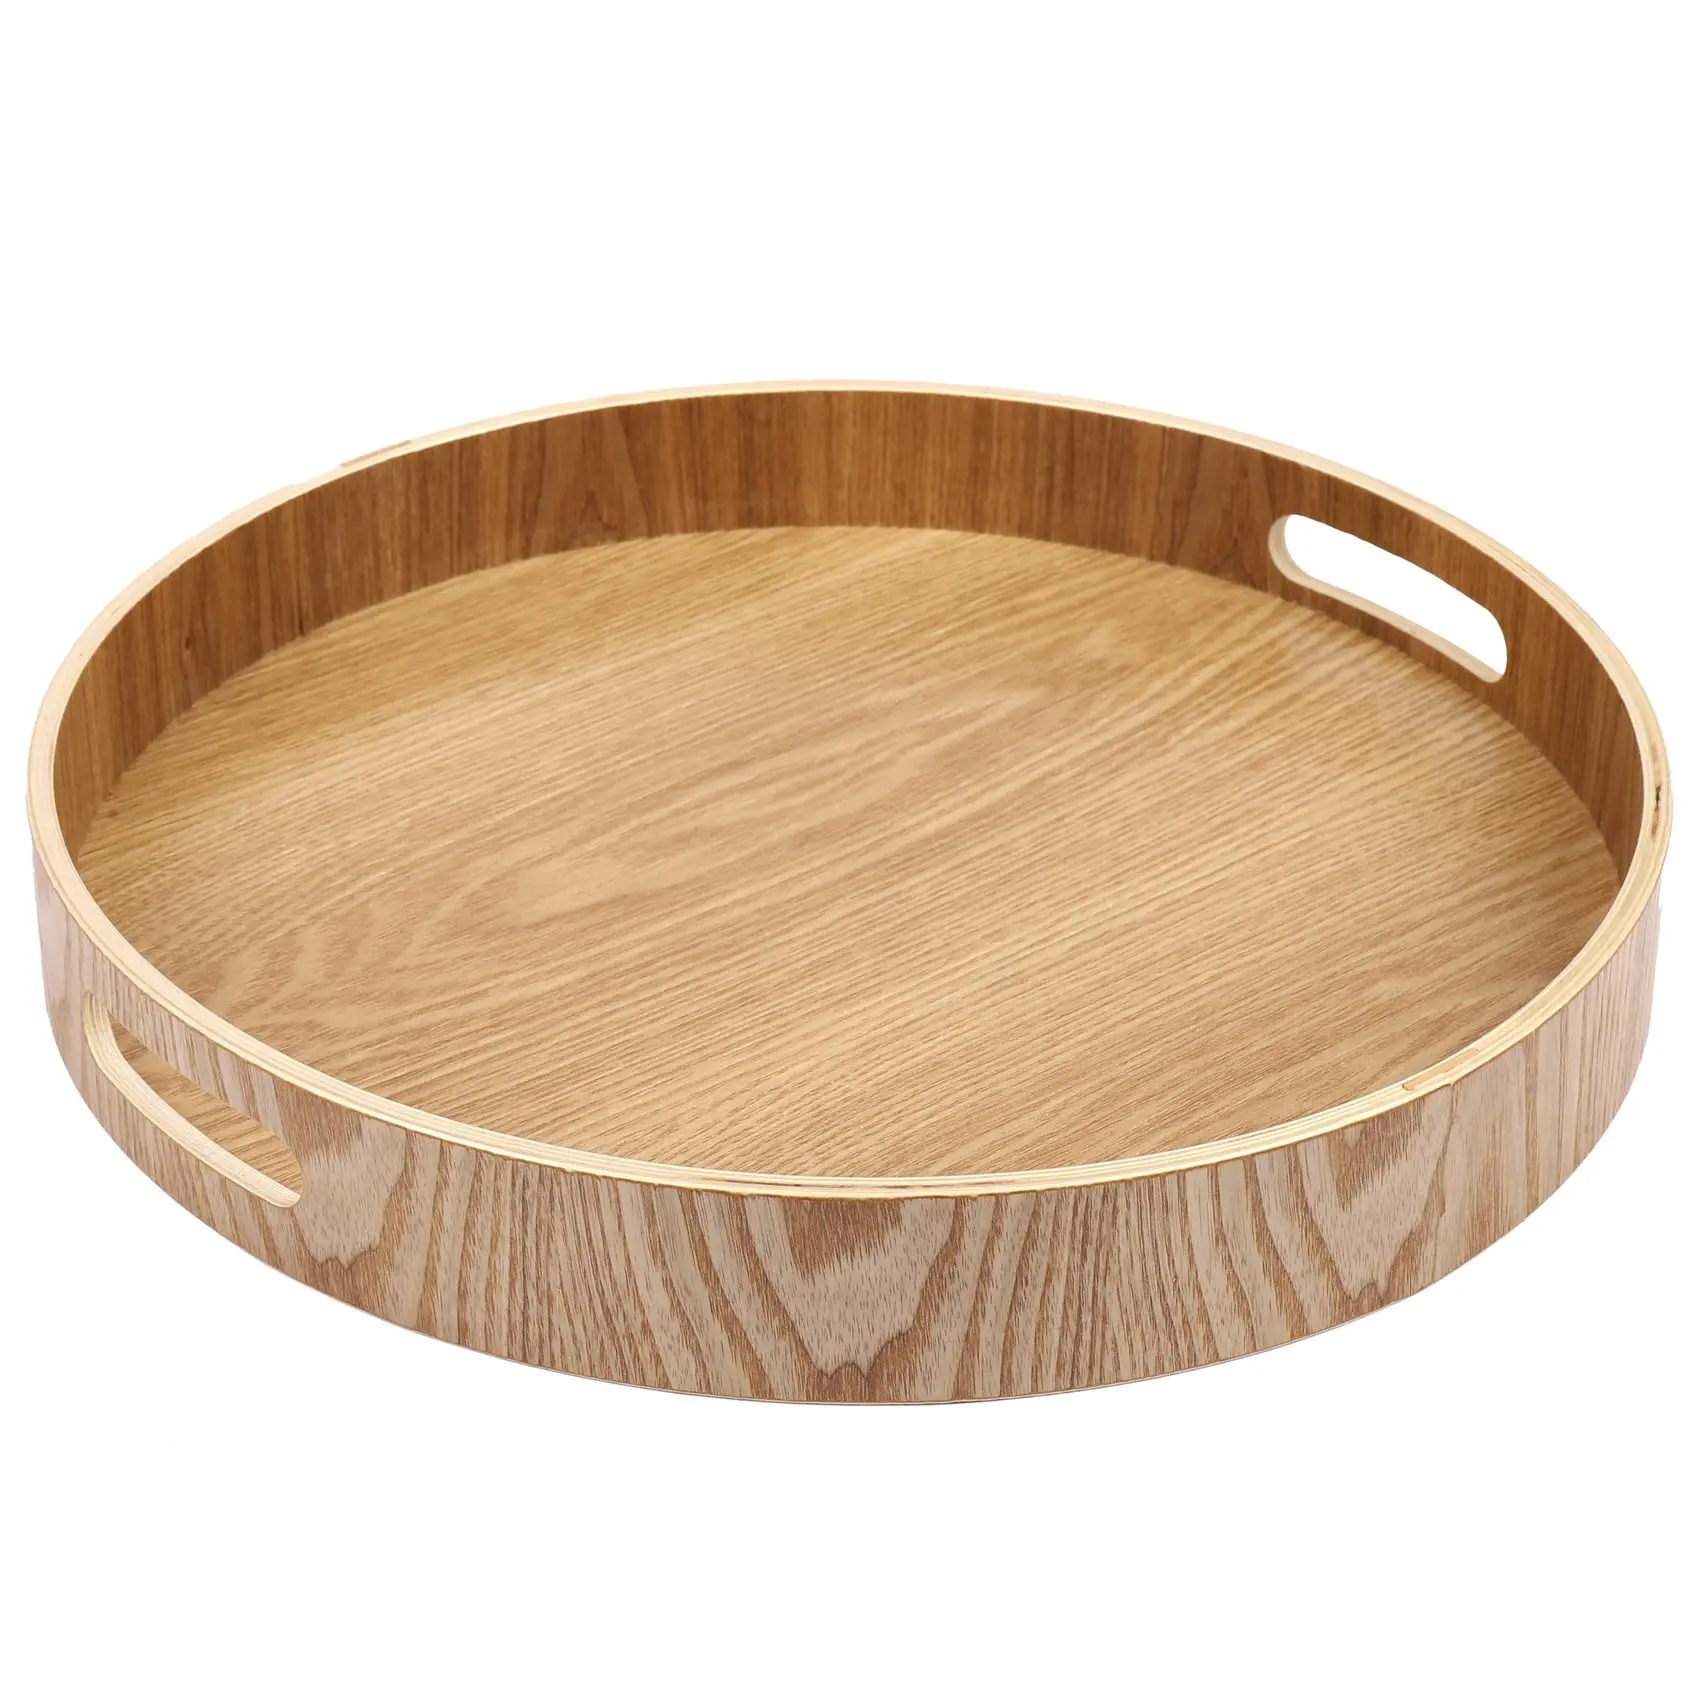 

Круглый сервировочный бамбуковый деревянный поднос для ужина, подносы для чайного бара, контейнер для завтрака, ручка, поднос для хранения 3